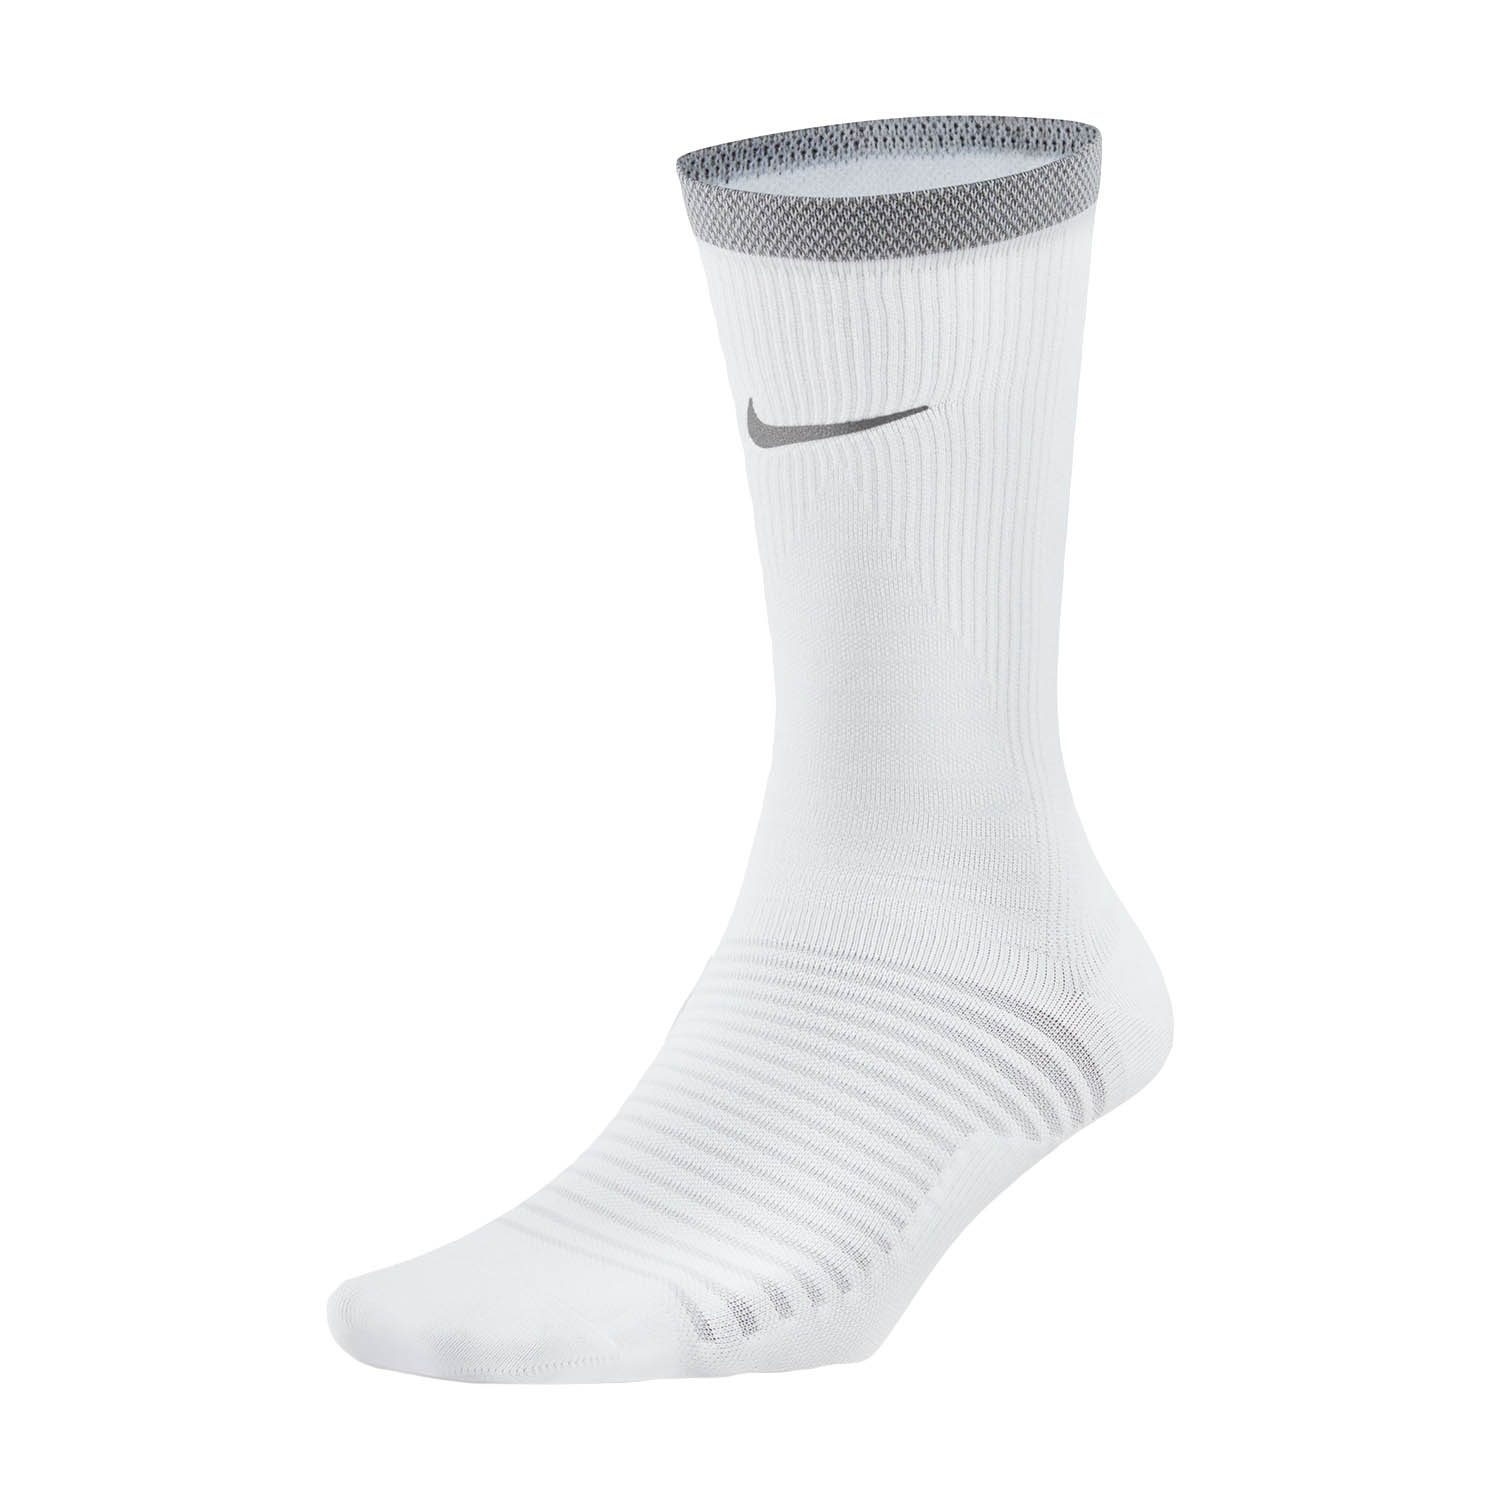 Nike Spark Lightweight Running Socks - White/Reflective Silver